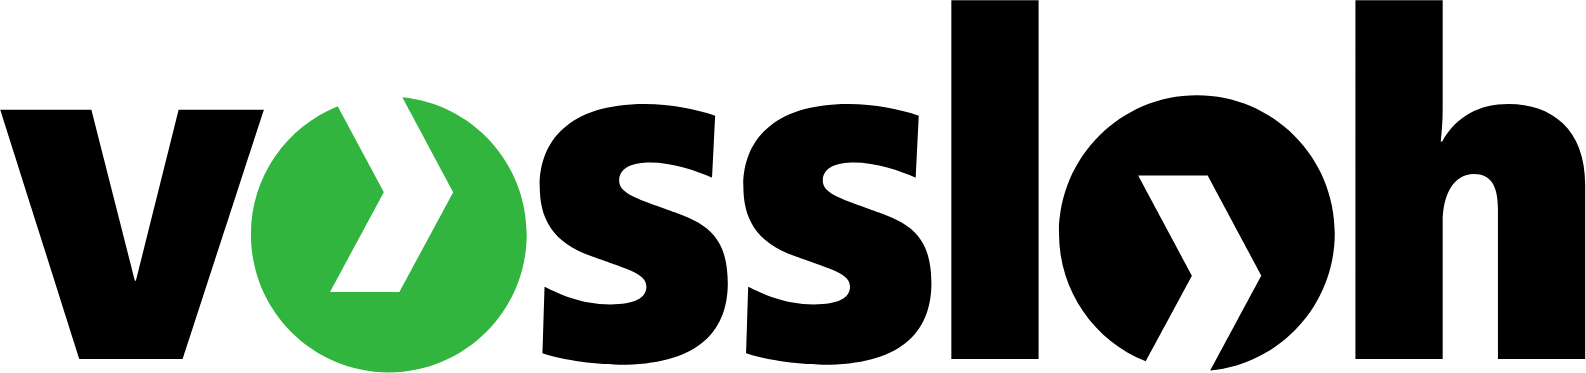 Vossloh AG logo large (transparent PNG)